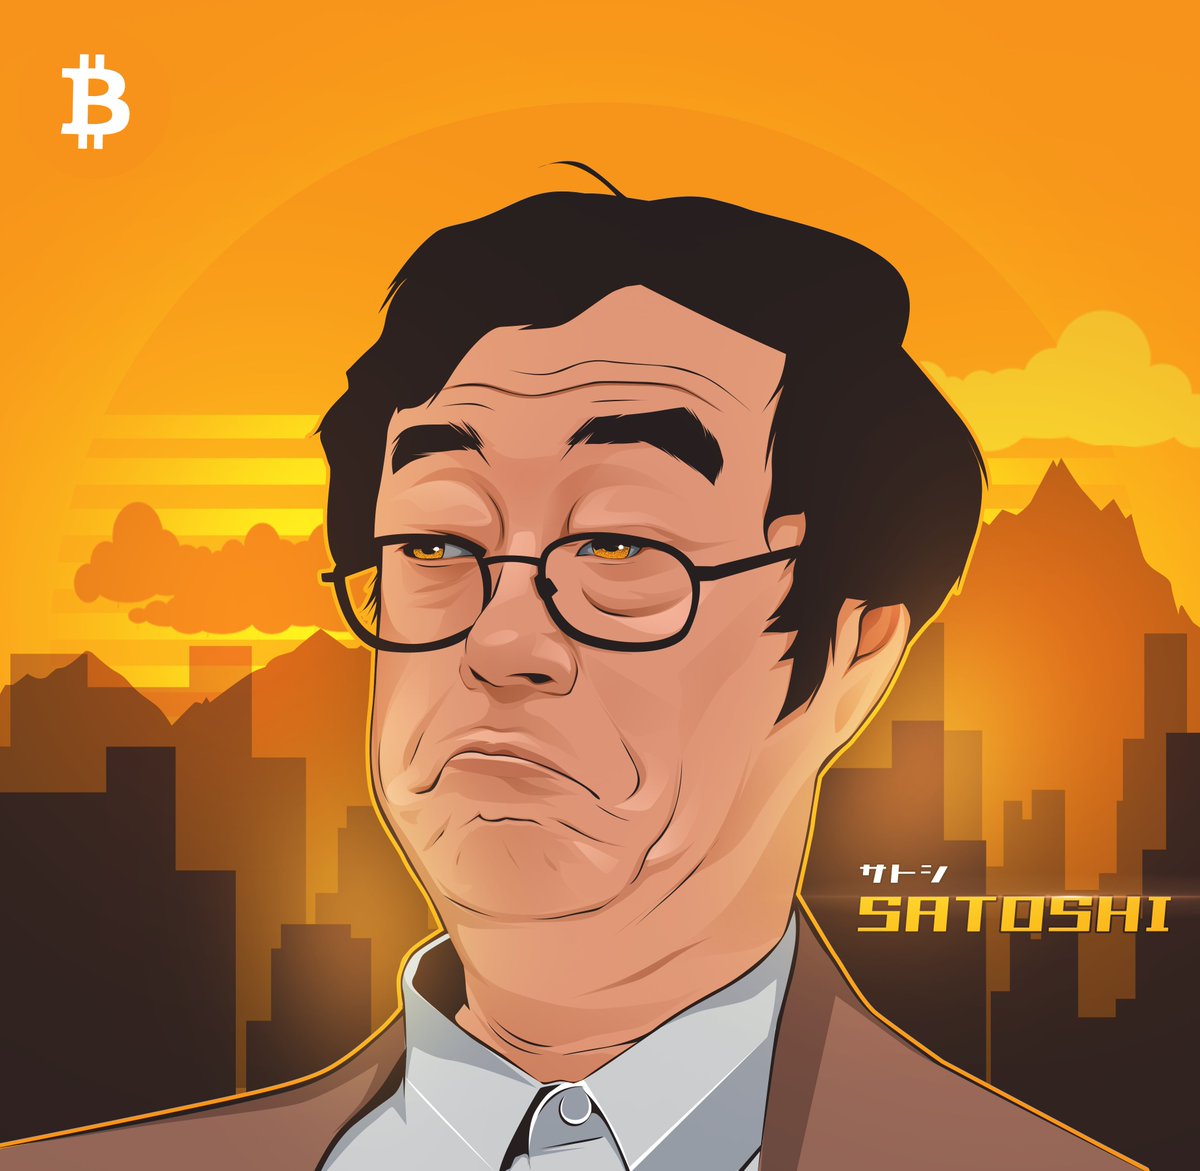 satoshi-nakamoto-ty-phu-bi-an-nguoi-sang-lap-ra-bitcoin-3